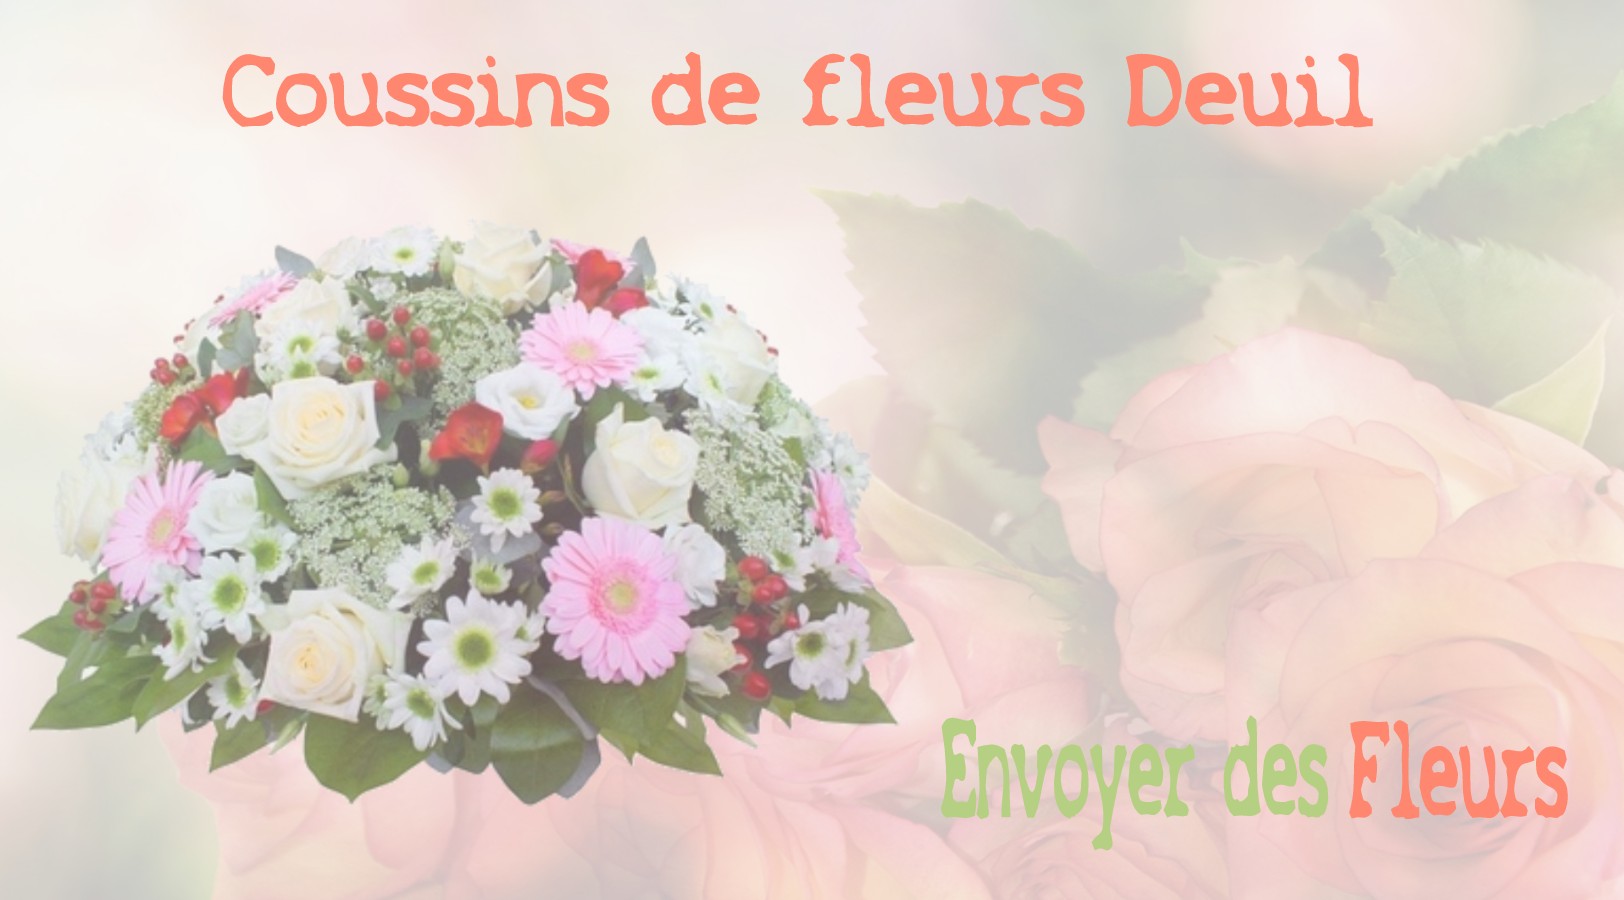 Les coussins de fleurs deuil - LIVRAISON FLEURS DEUIL A AVRAINVILLE 91